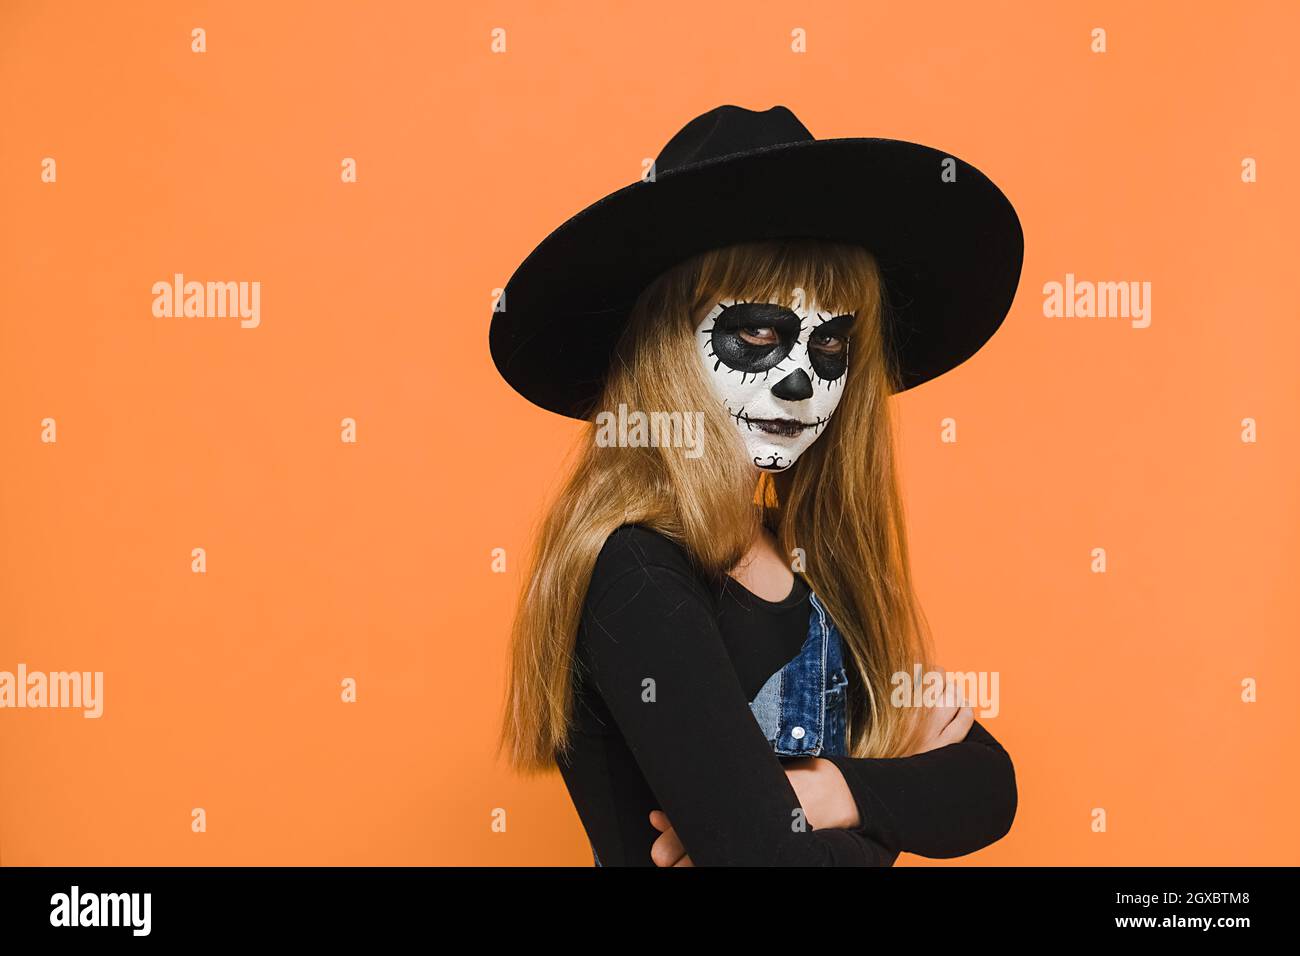 Wütend traurig kleine blonde Mädchen Kind mit Halloween gruselige Make-up-Maske, trägt schwarzen Hut, gekreuzte Arme, unglücklich Blick auf die Kamera Stockfoto